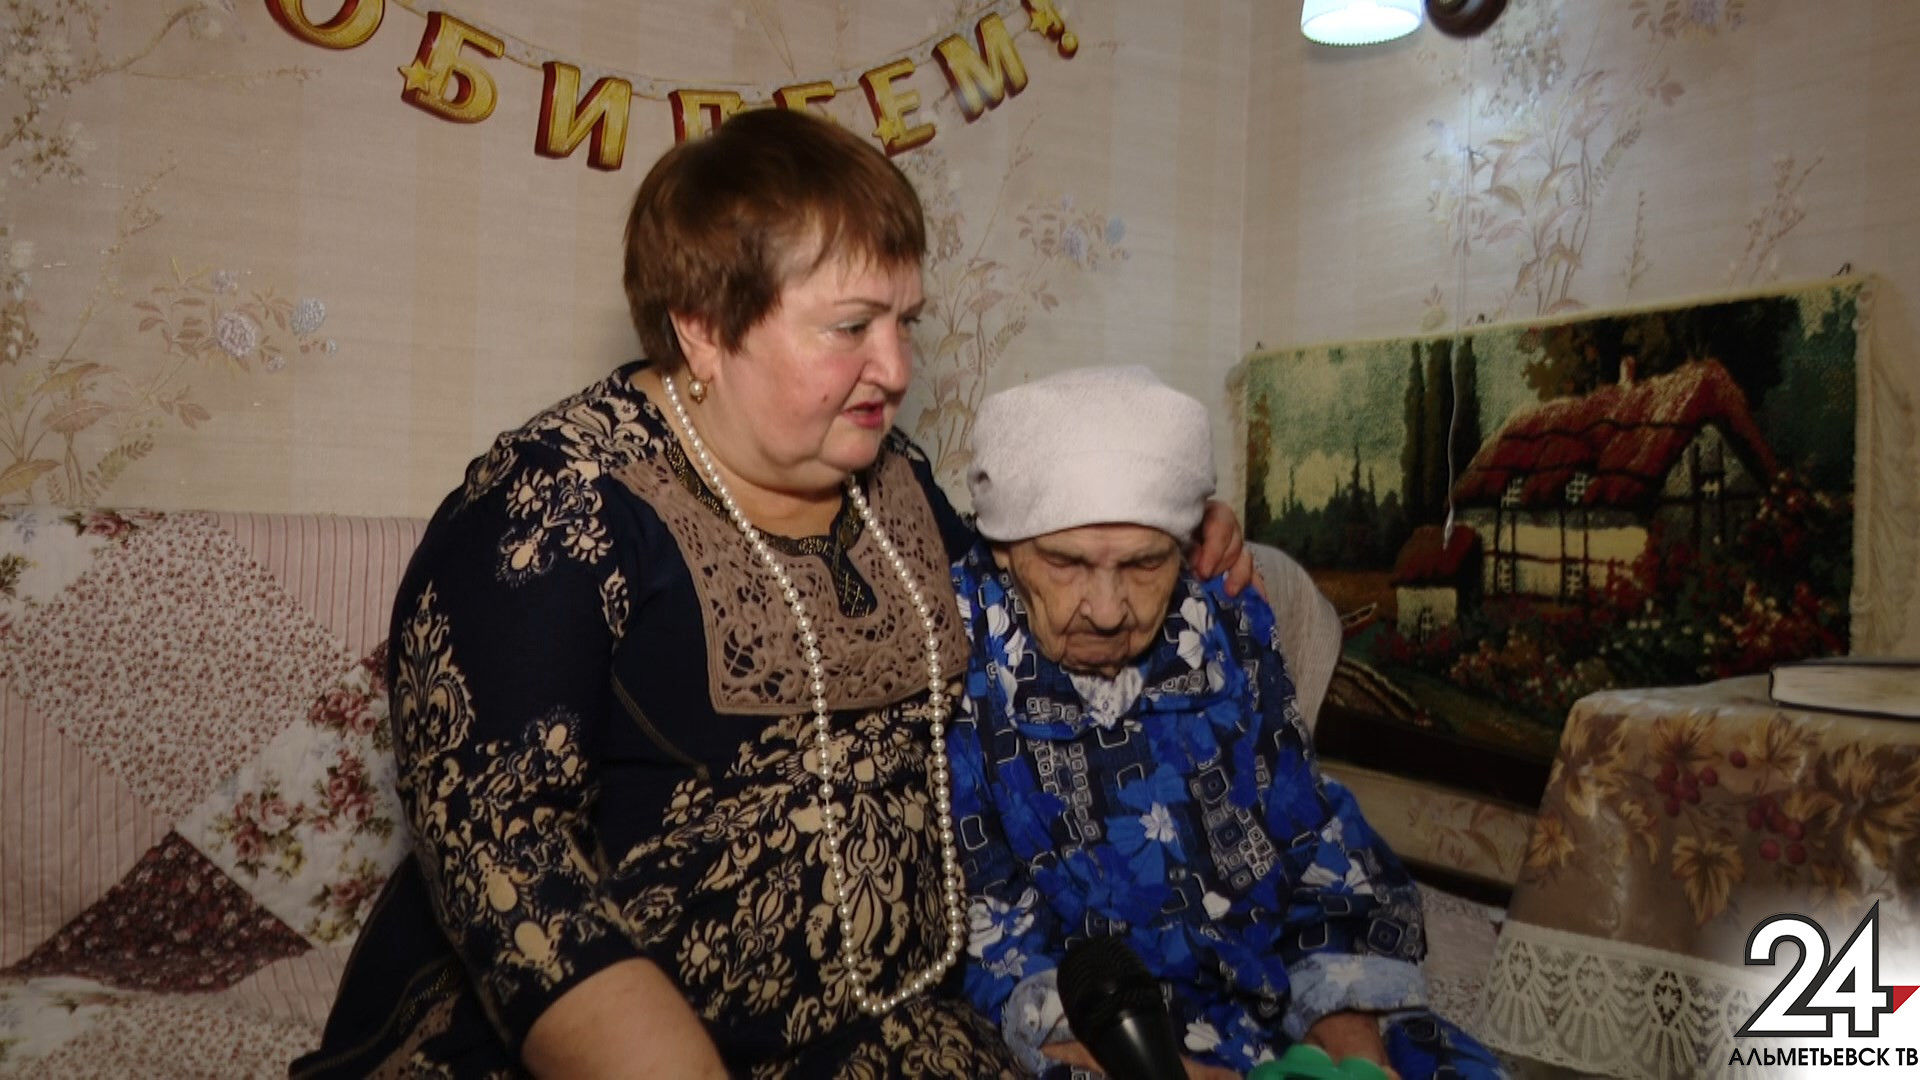 100-летняя жительница Альметьевска в свой юбилей спела любимую песню мужа